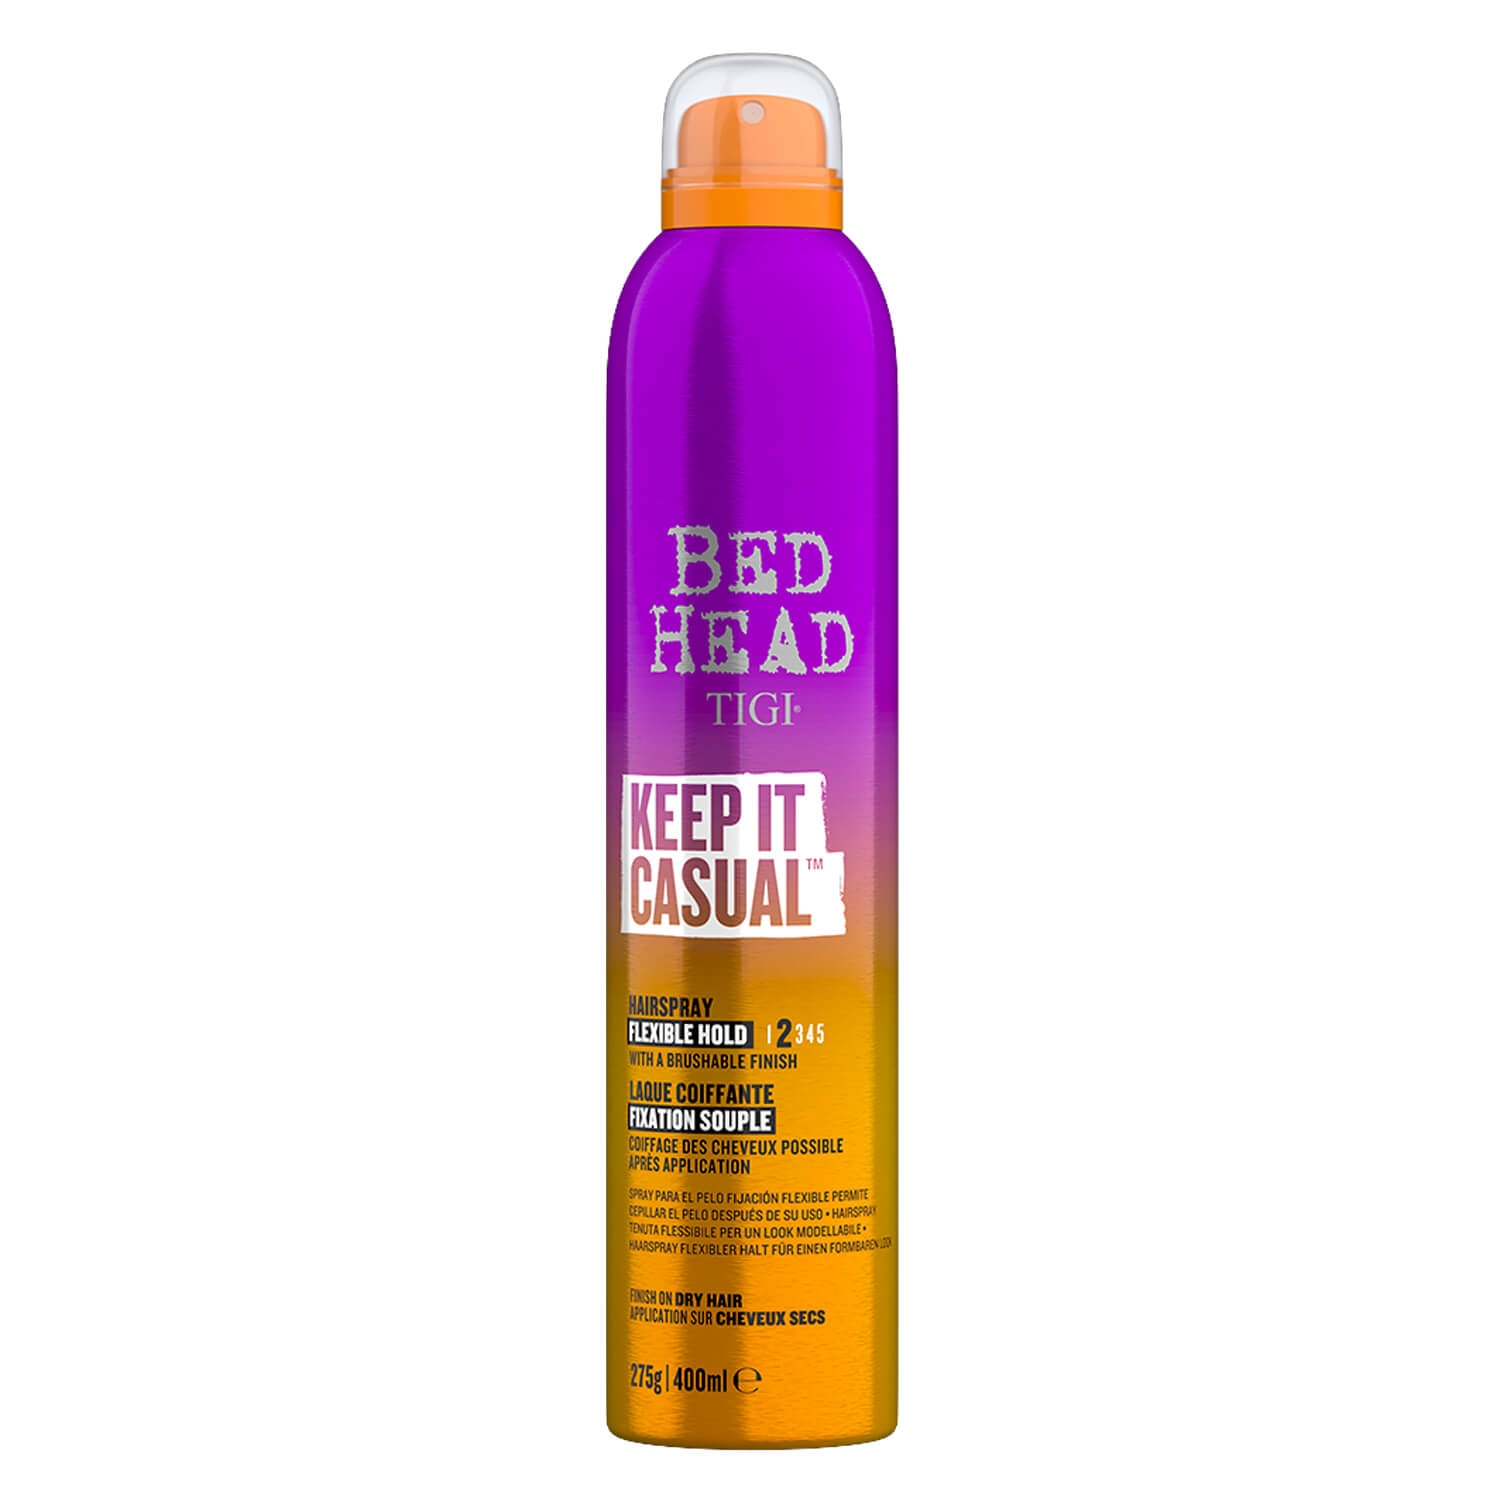 Produktbild von Bed Head - Keep It Casual Hairspray